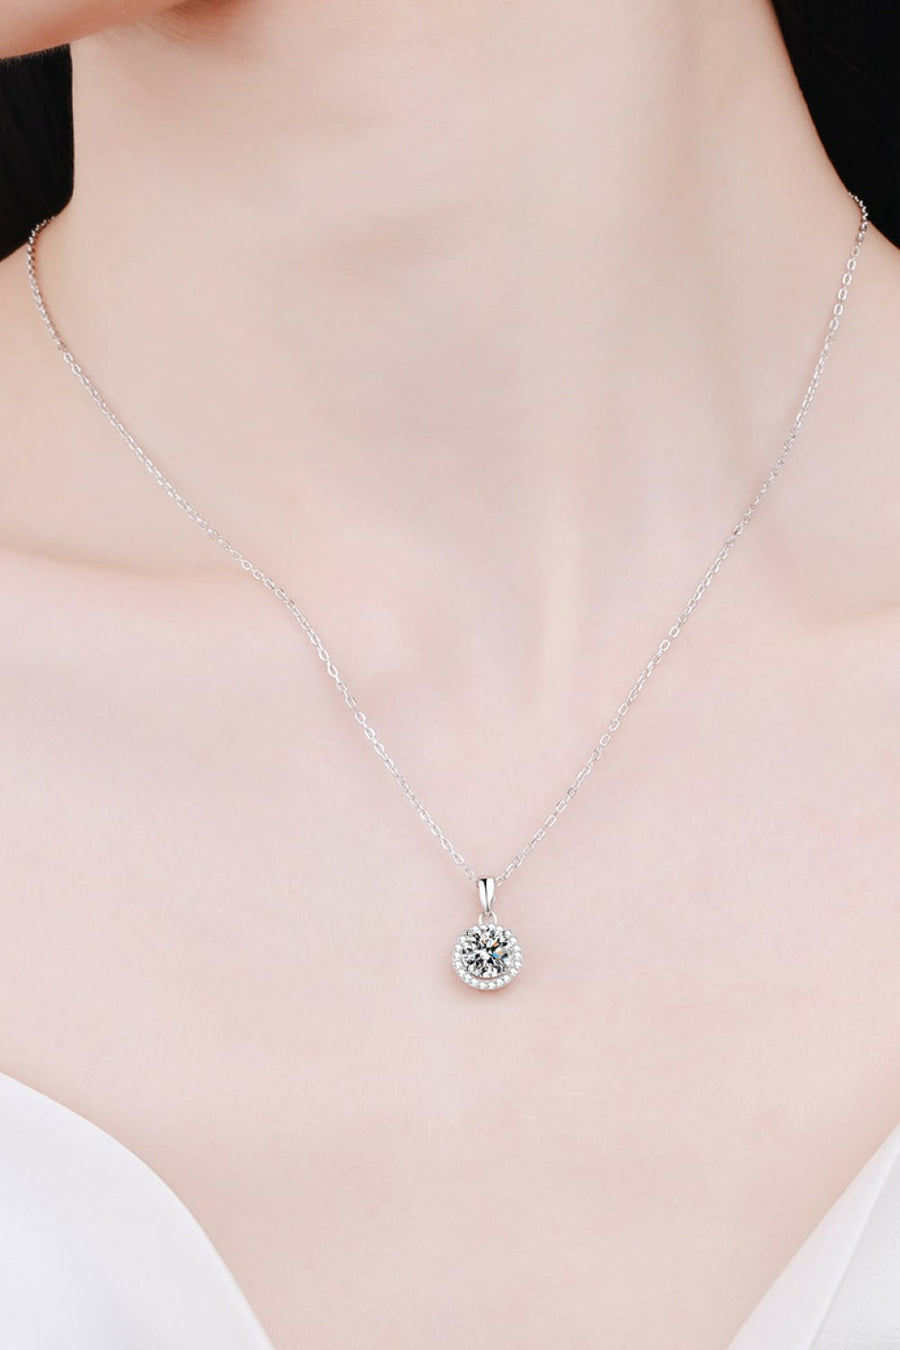 1# BEST Diamond Necklace, Earrings, Bracelet Jewelry Bundle Set Gift for Women | #1 Best Most Top Trendy Trending Round Diamond Necklace, Earrings, Bracelet Jewelry Gift for Women, Mother, Wife, Daughter, Ladies | MASON New York